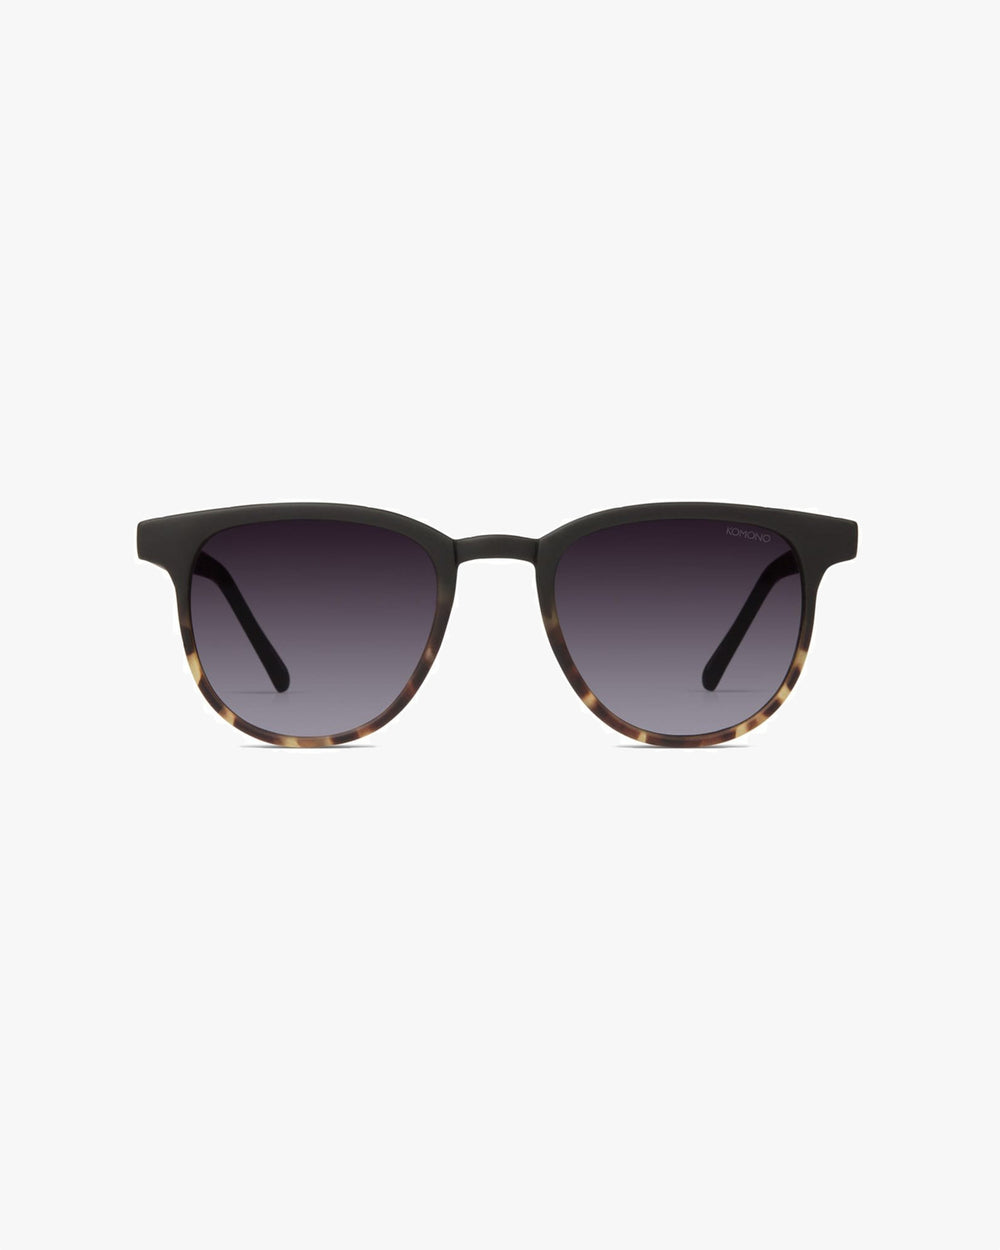 Gafas de sol Francis - matte black tortoise - Tequila Sunset